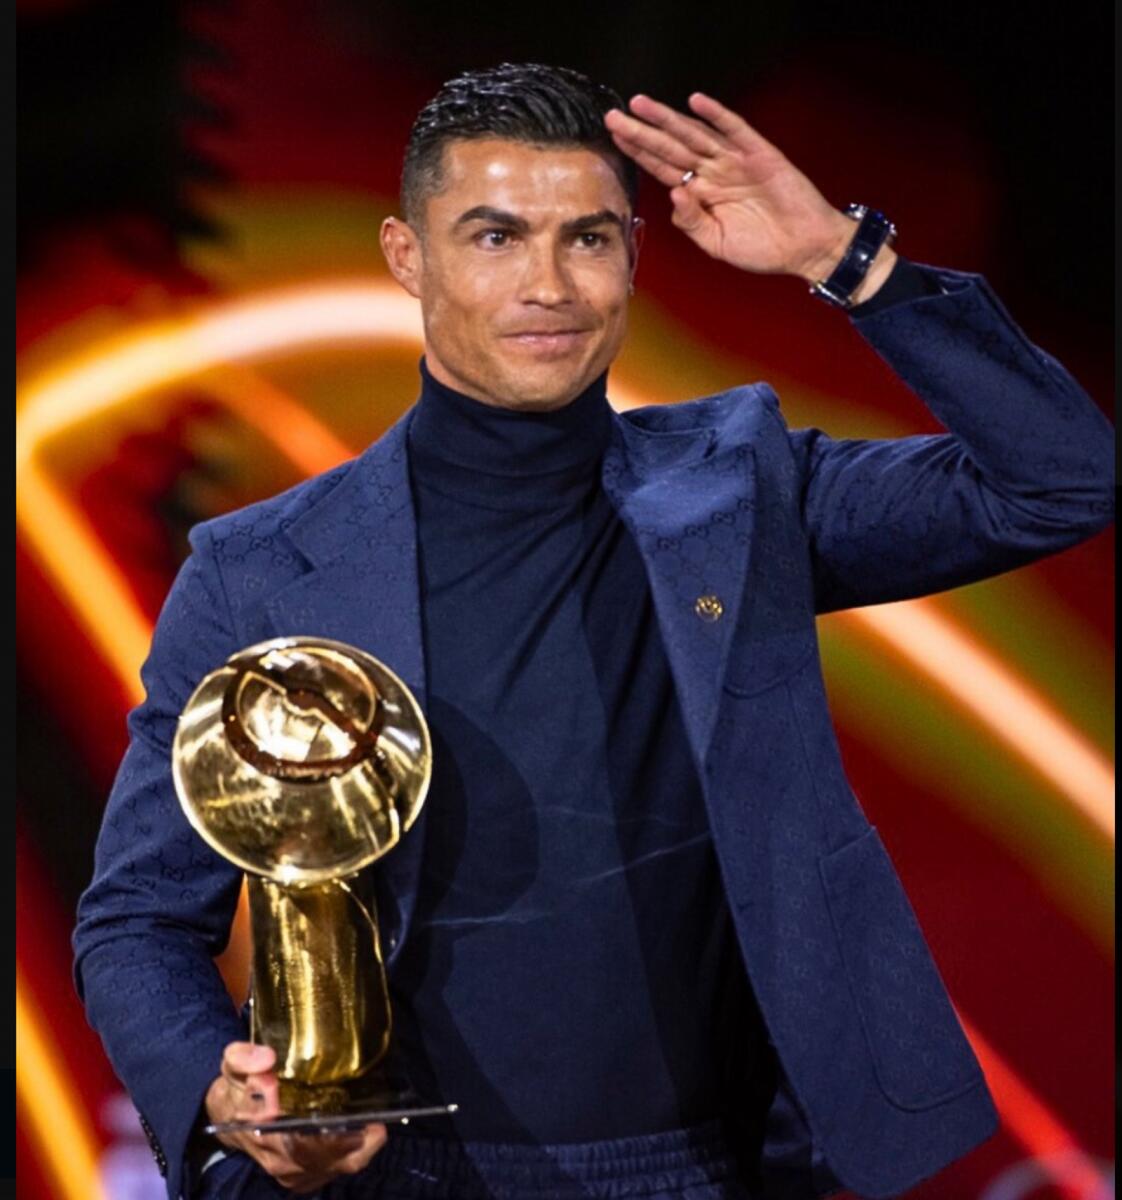 Cristiano Ronaldo at the Globe Soccer Awards in Dubai on Friday night. — X